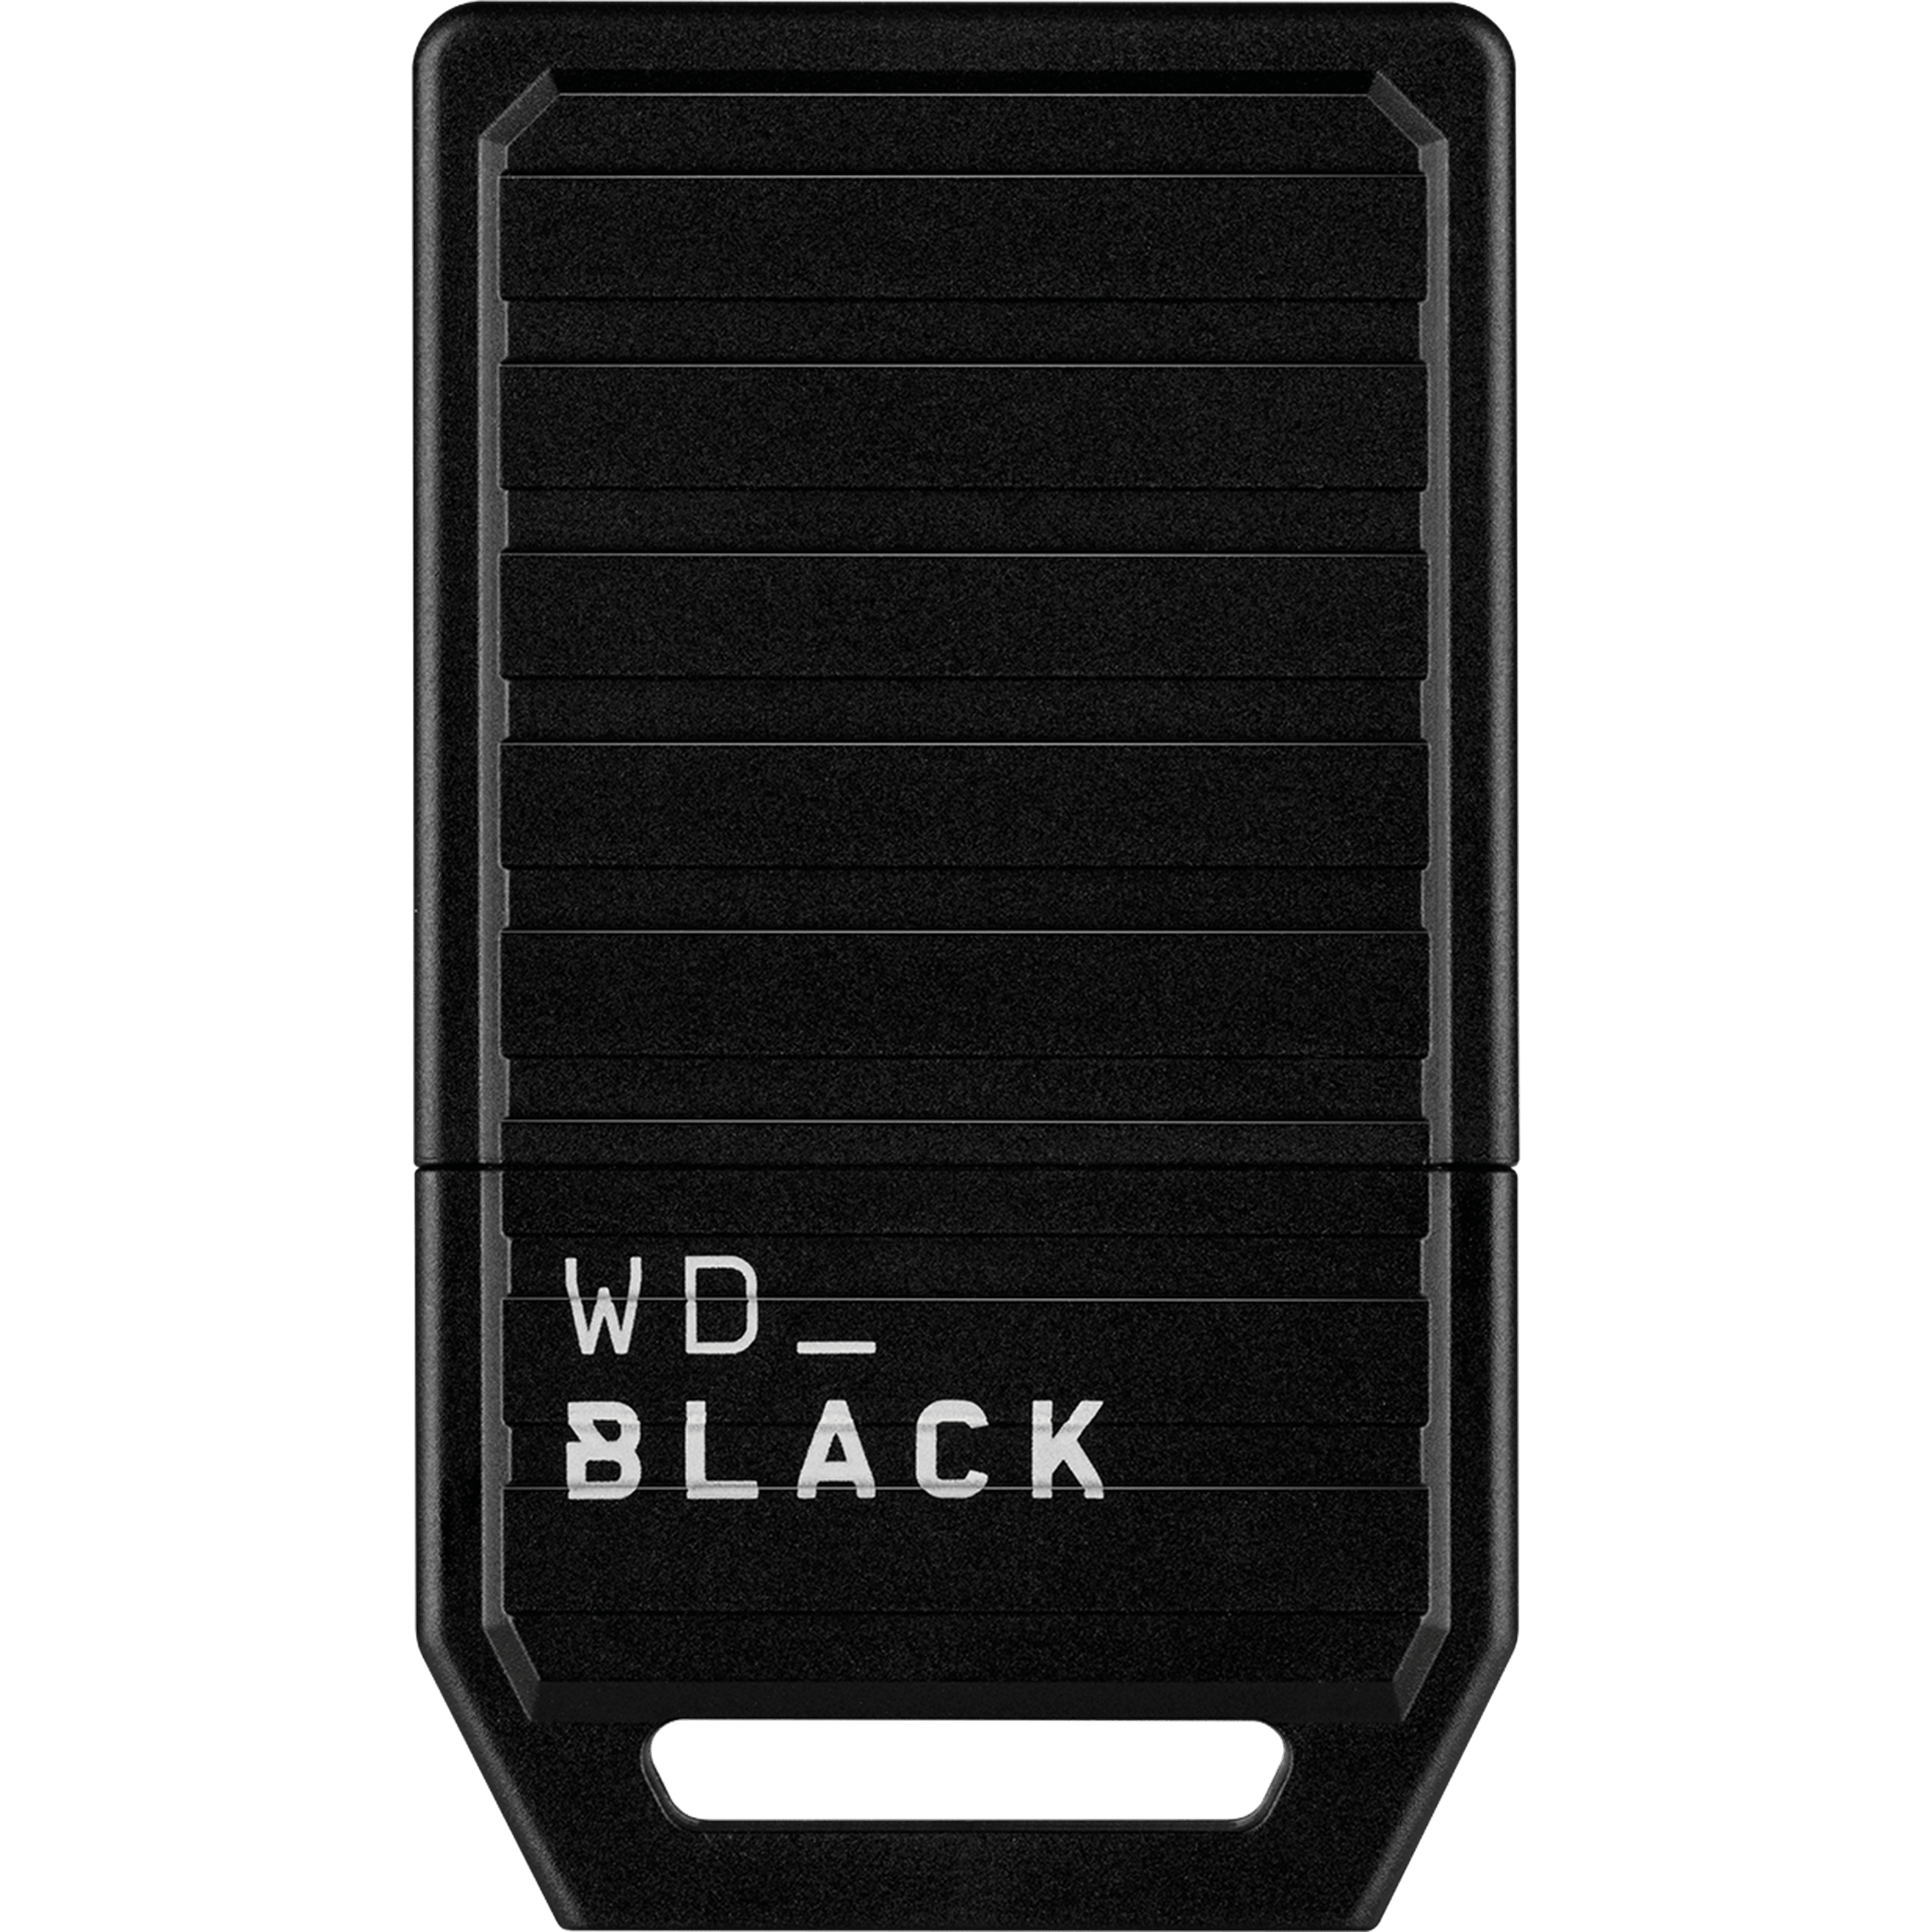 כרטיס הרחבת זיכרון WD Black C50 Expansion Card for Xbox Series X|S 1TB - צבע שחור חמש שנות אחריות ע